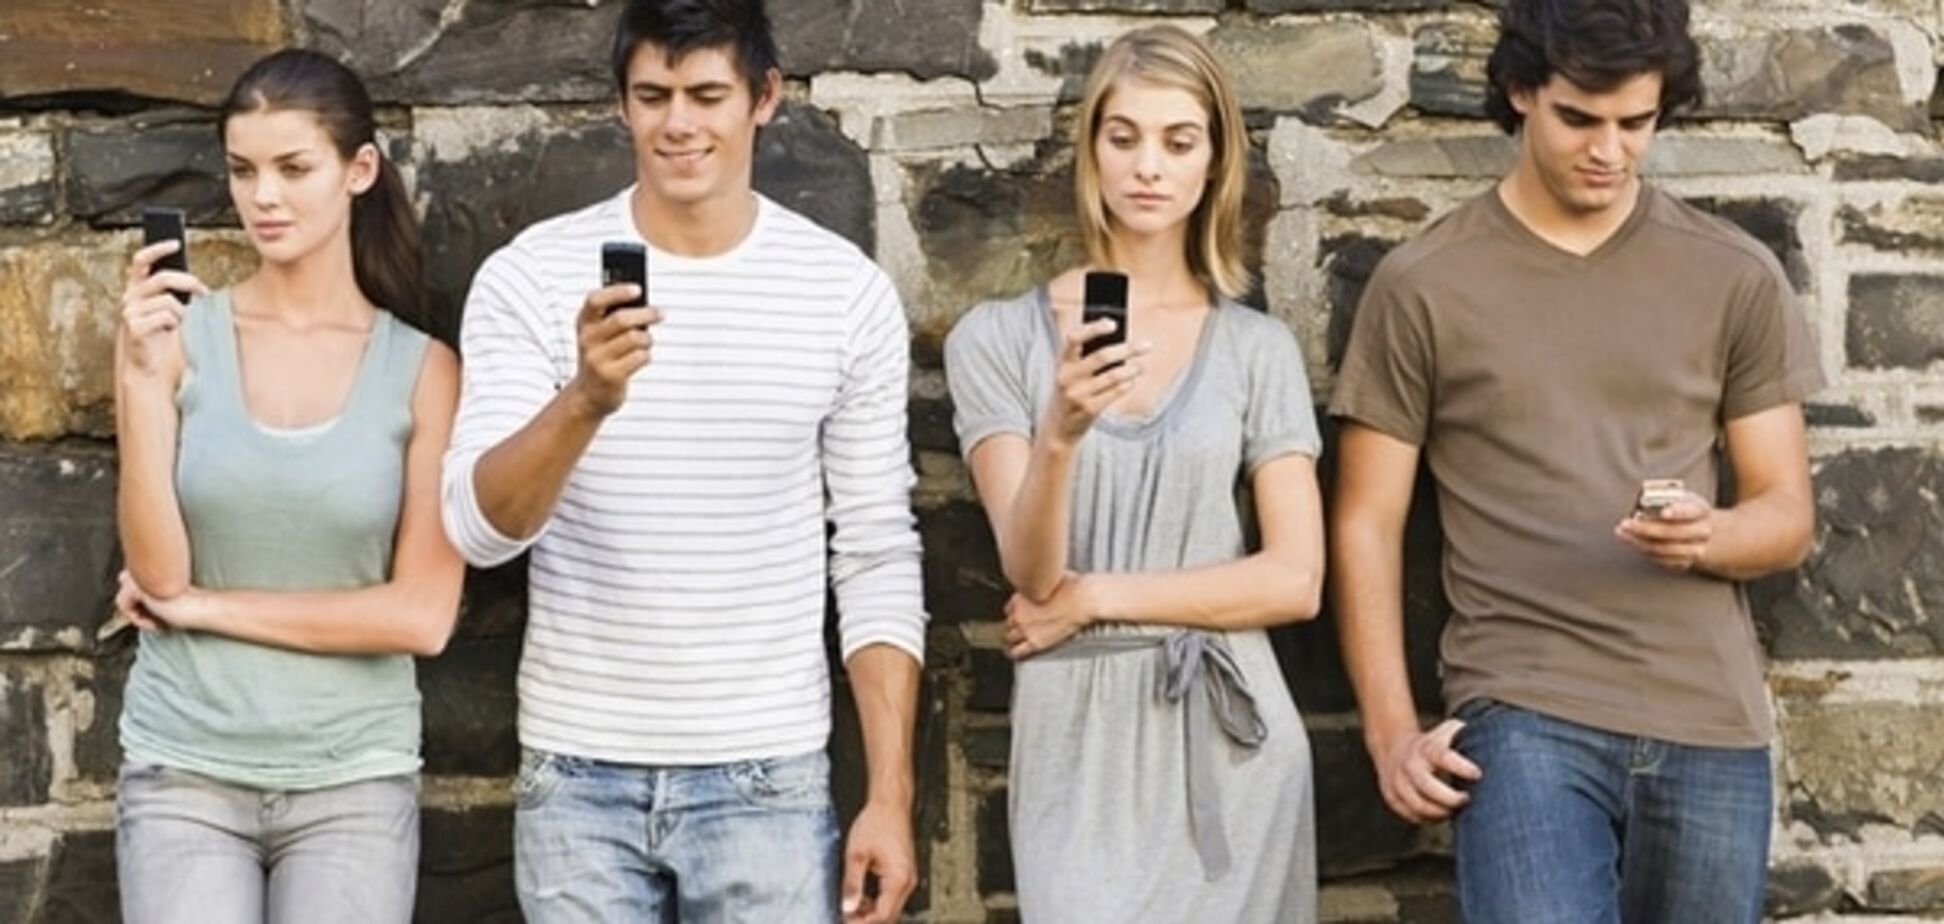 Ученые предупредили: мобильные телефоны портят романтику в отношениях